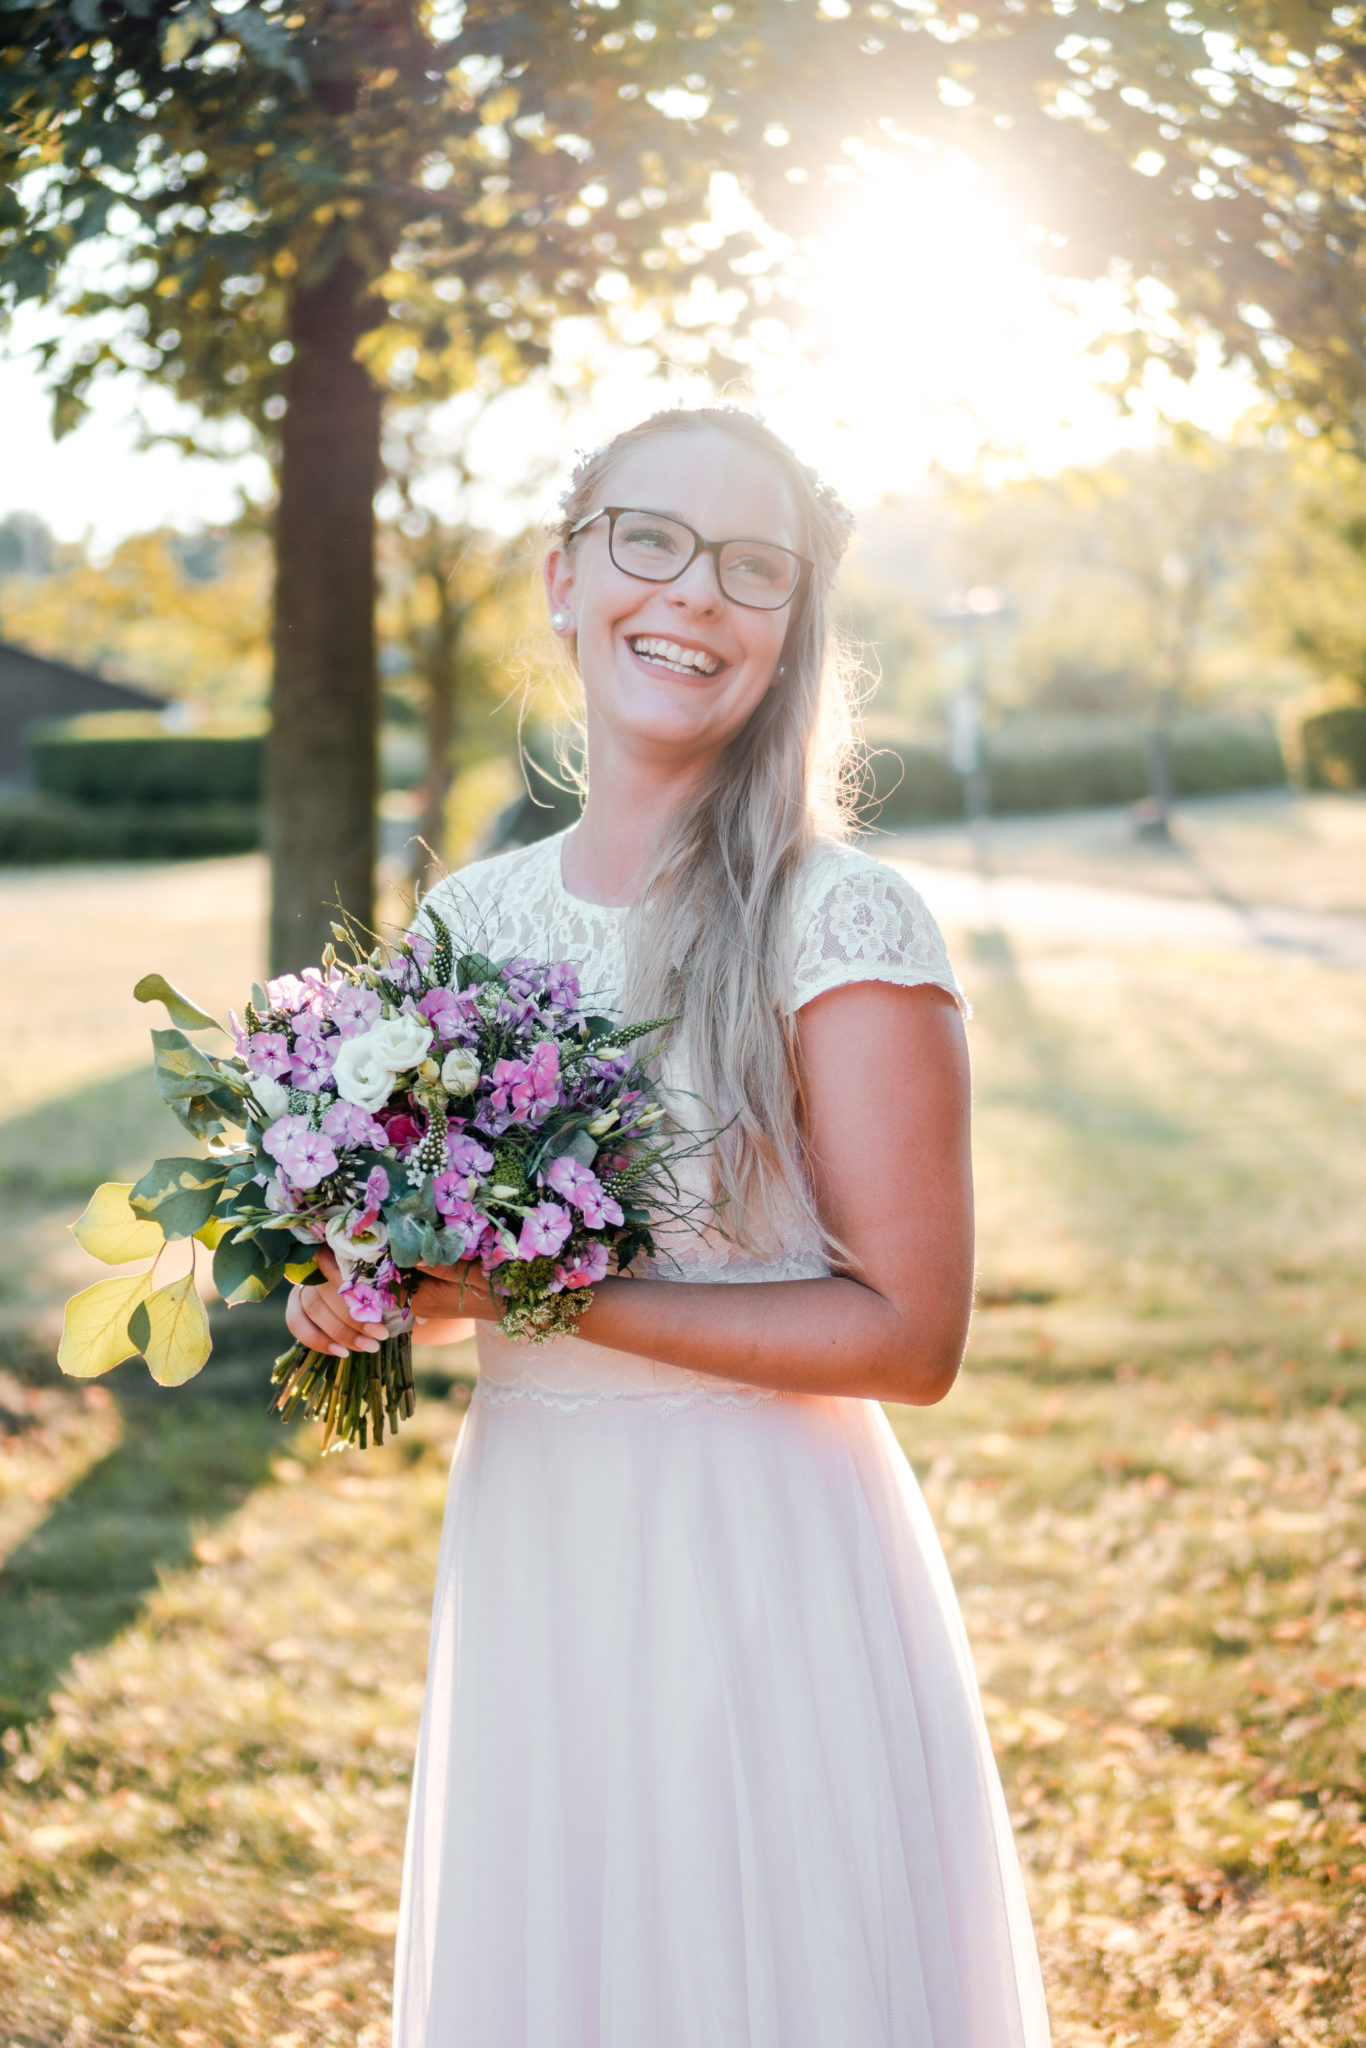 Lachende Braut bei Brautshooting in Kleingärten während Sonnenuntergang